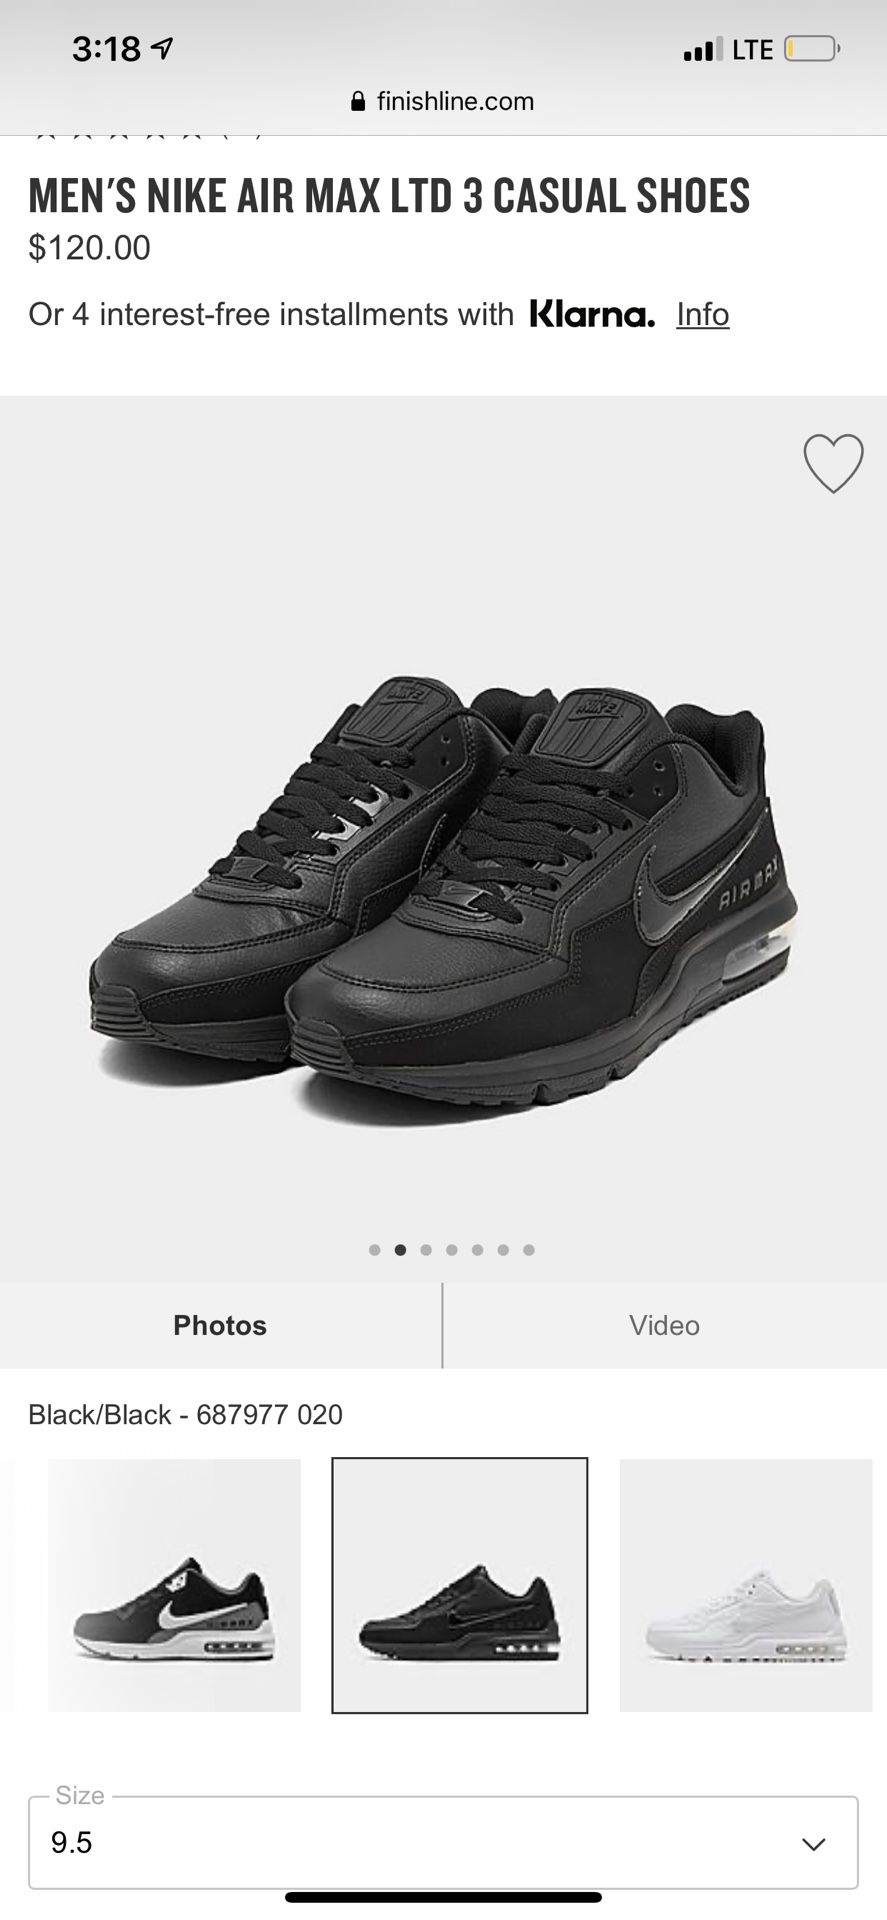 Nike air max ltd 3 black. Size 9.5